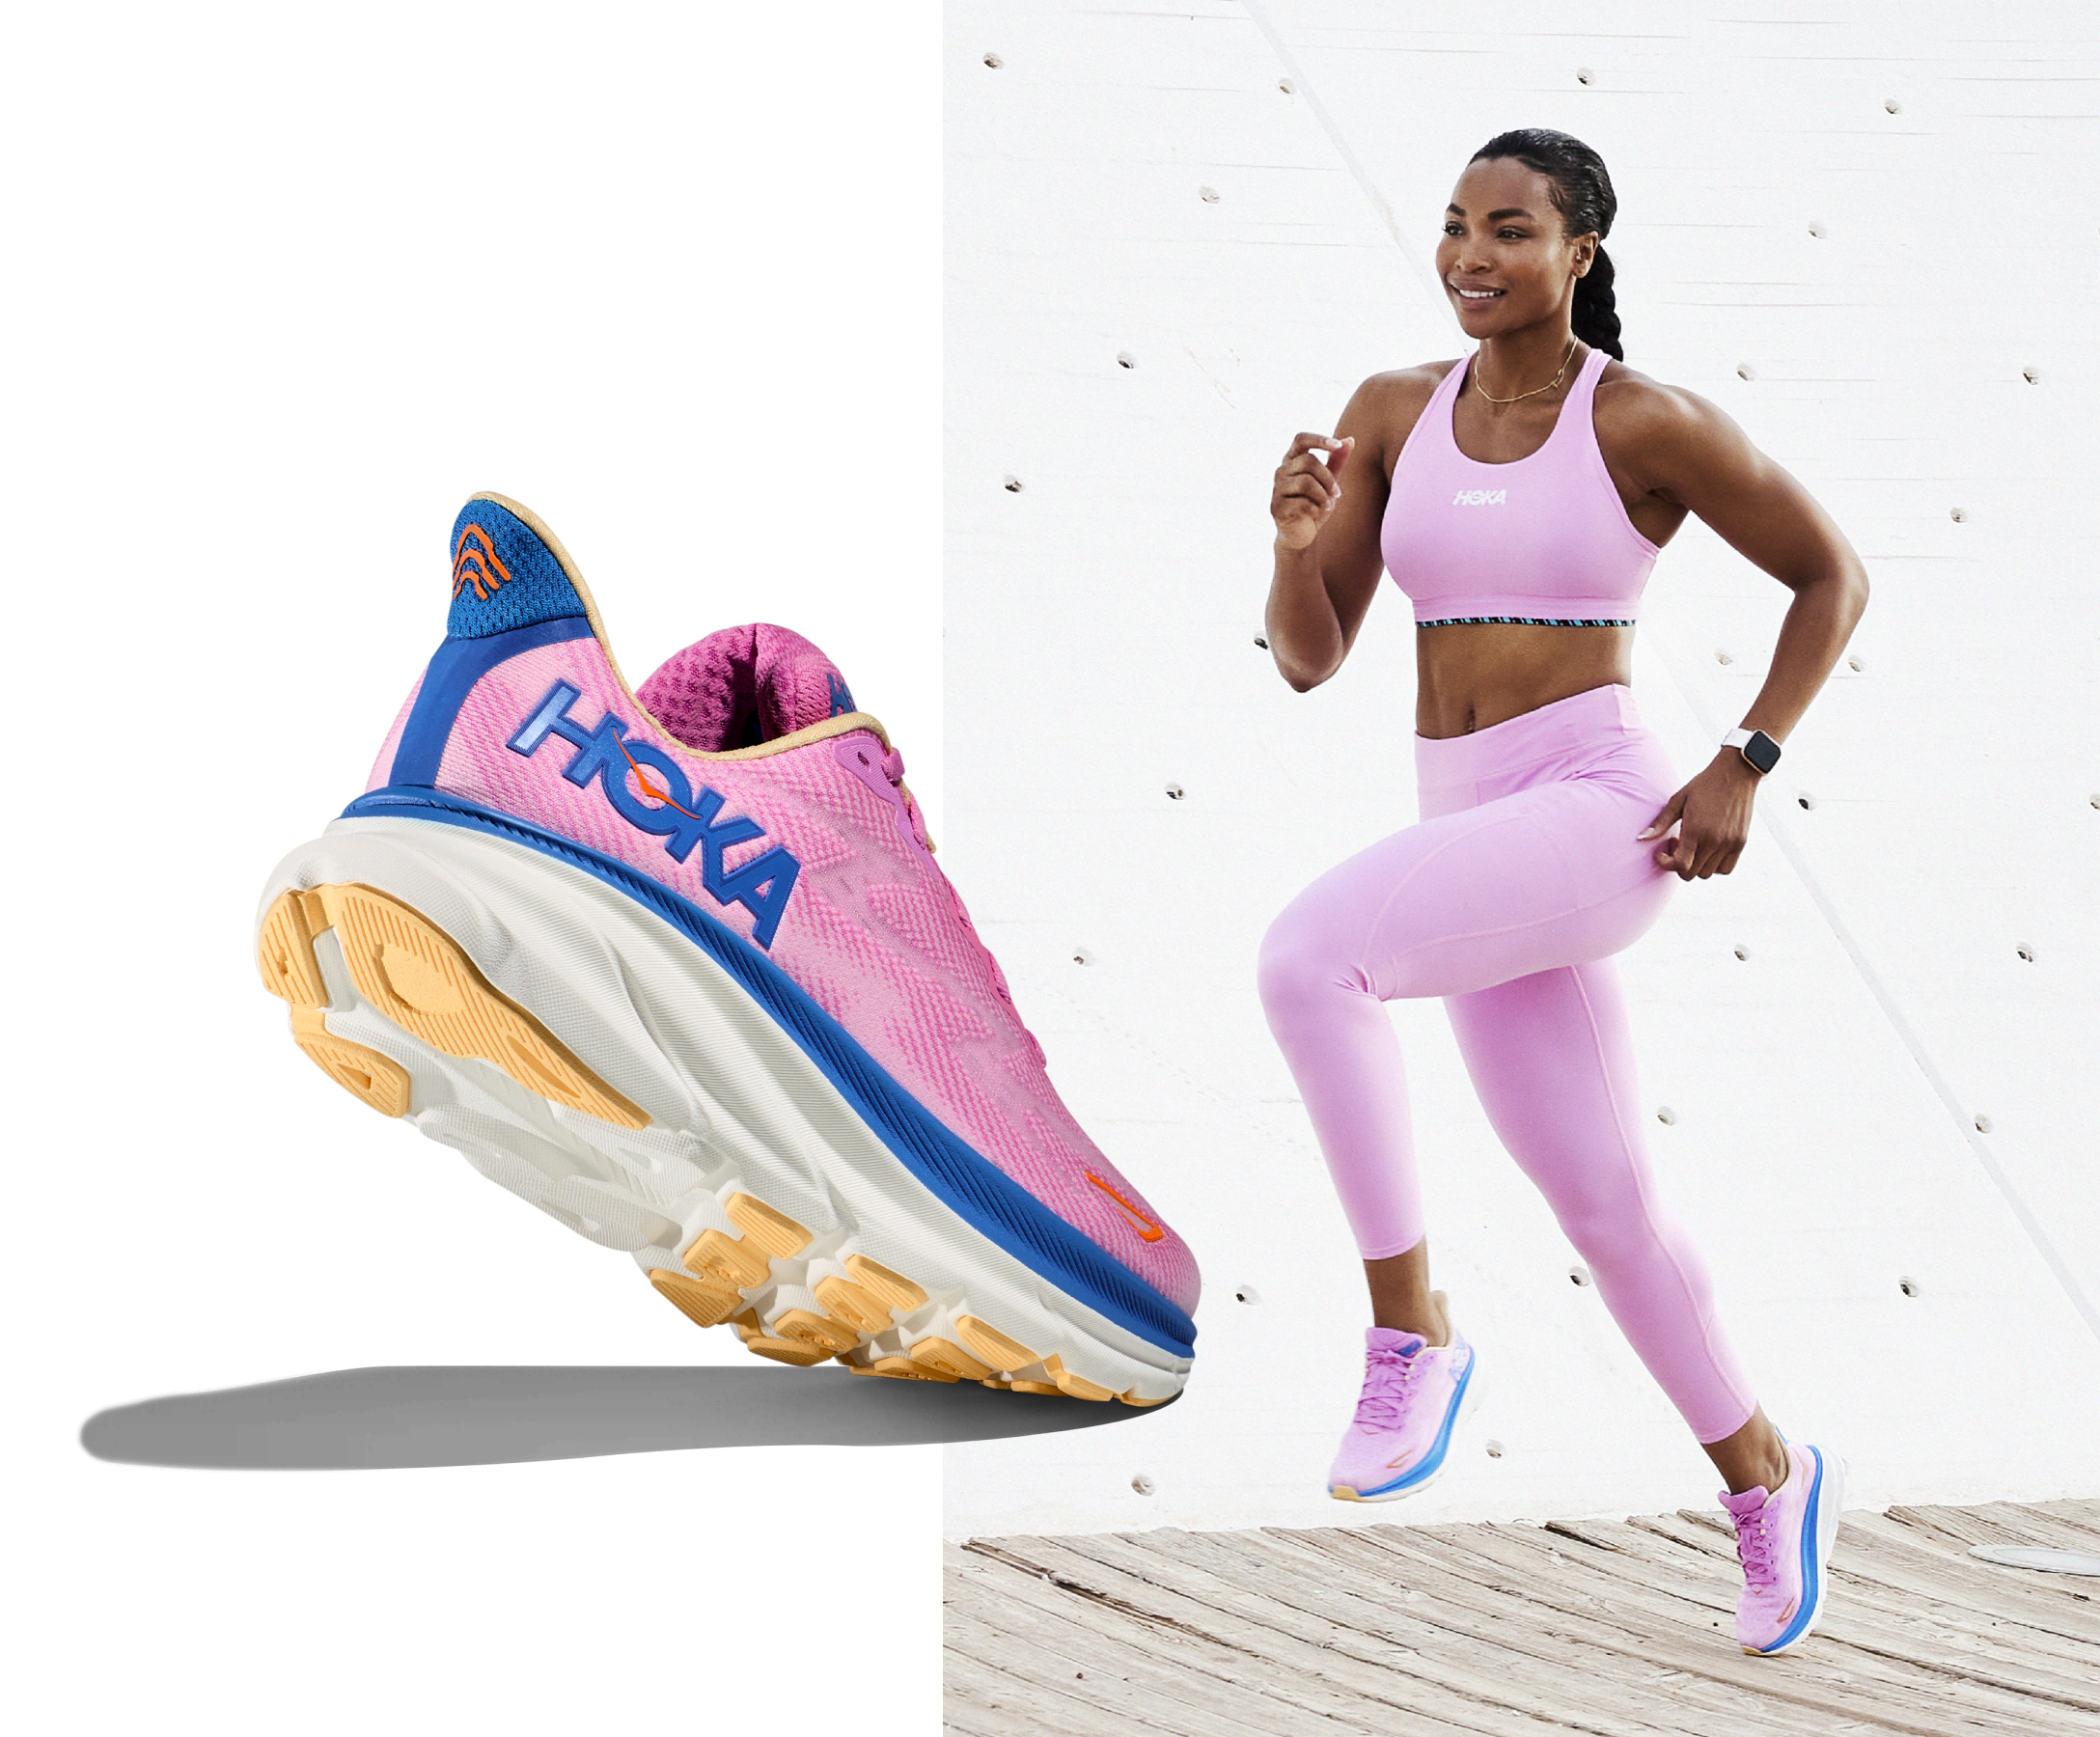 HOKA Clifton 9 Road-Running Shoes - Women's